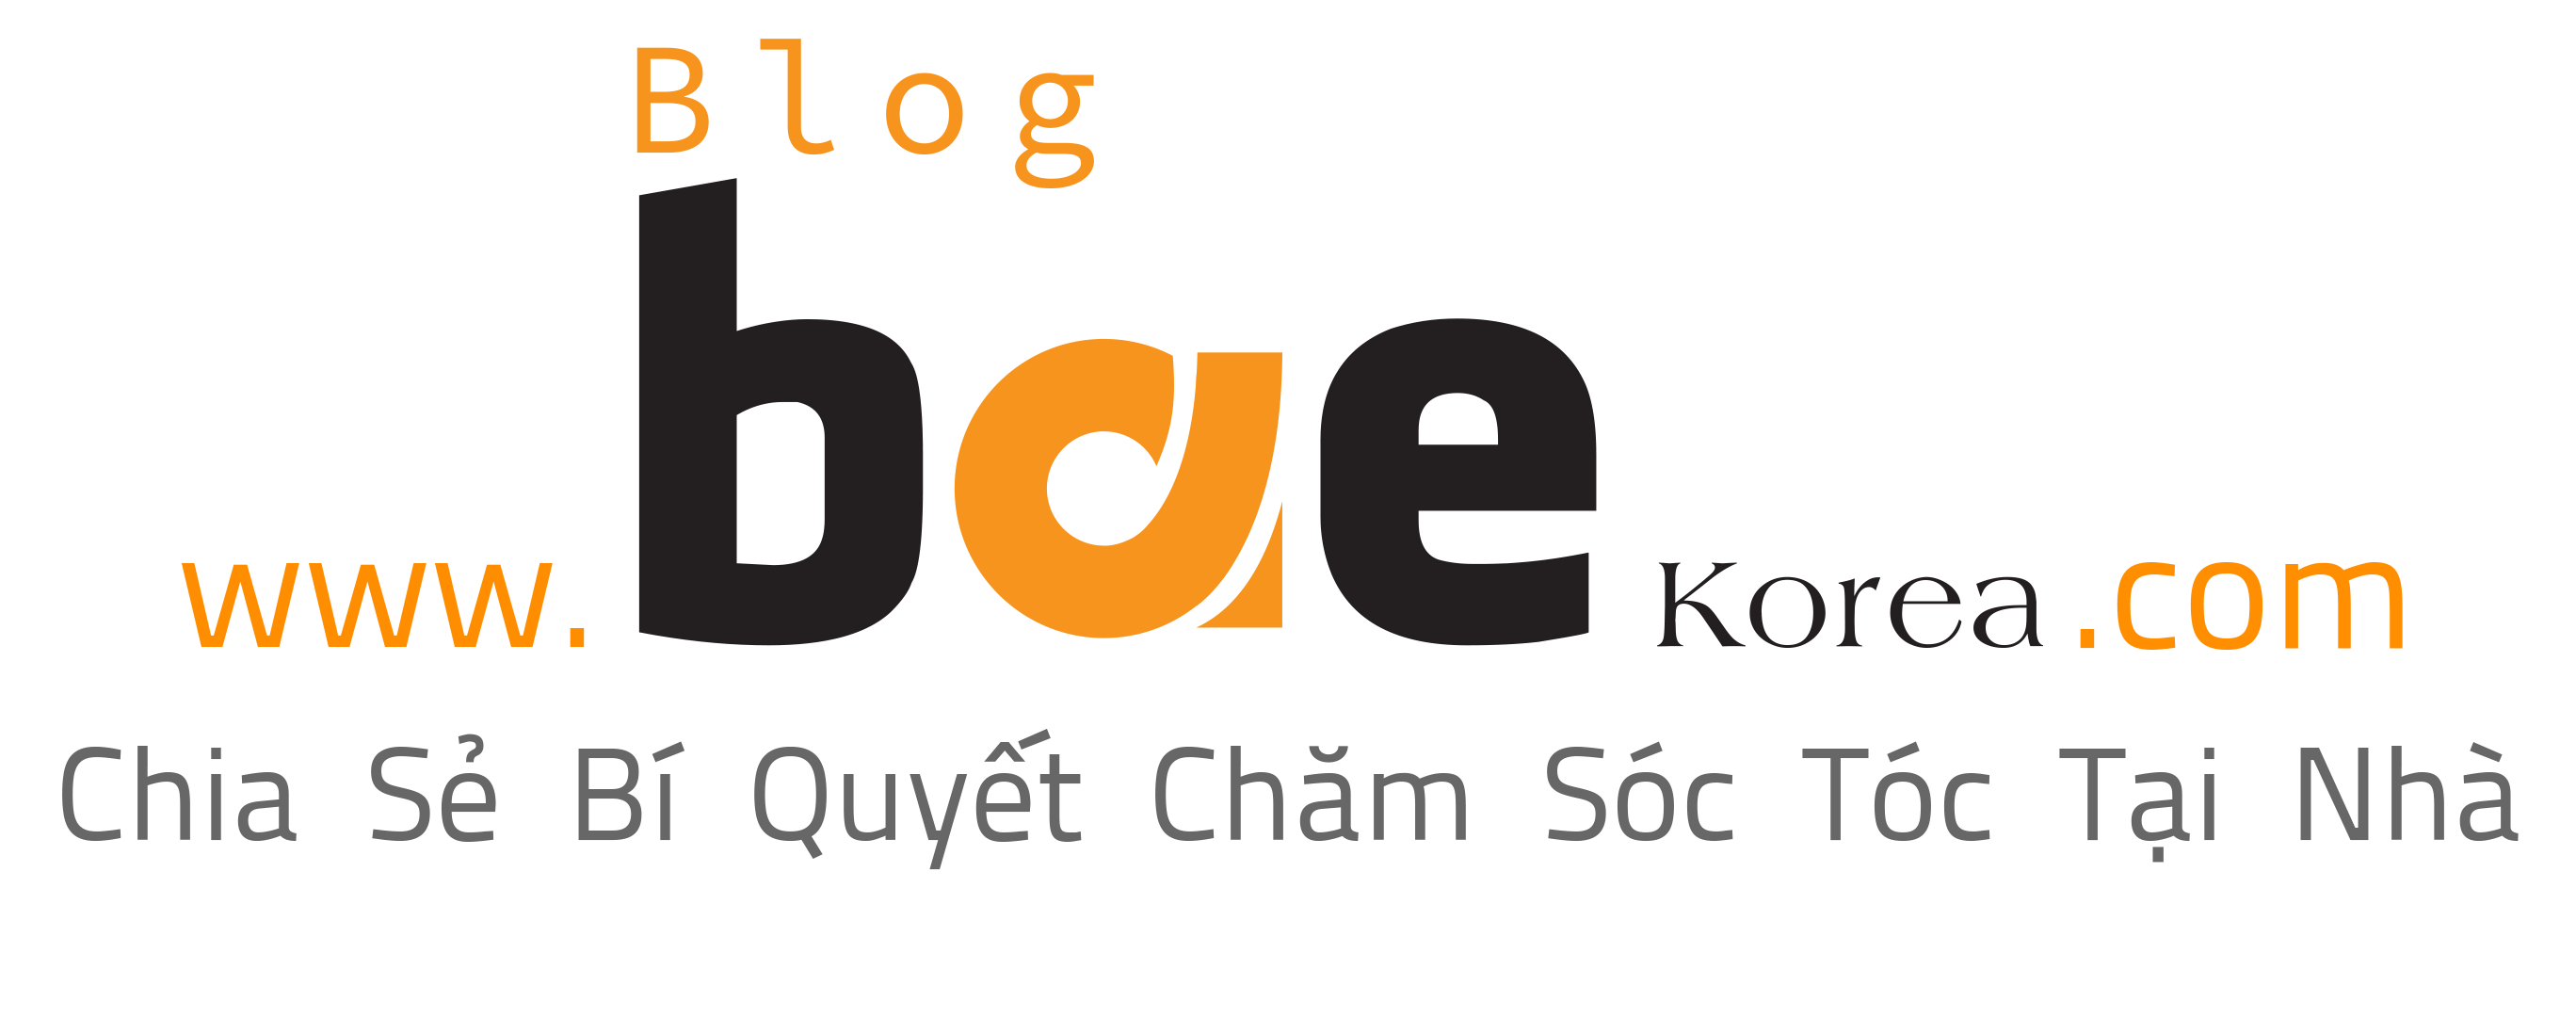 Blog Bae Korea